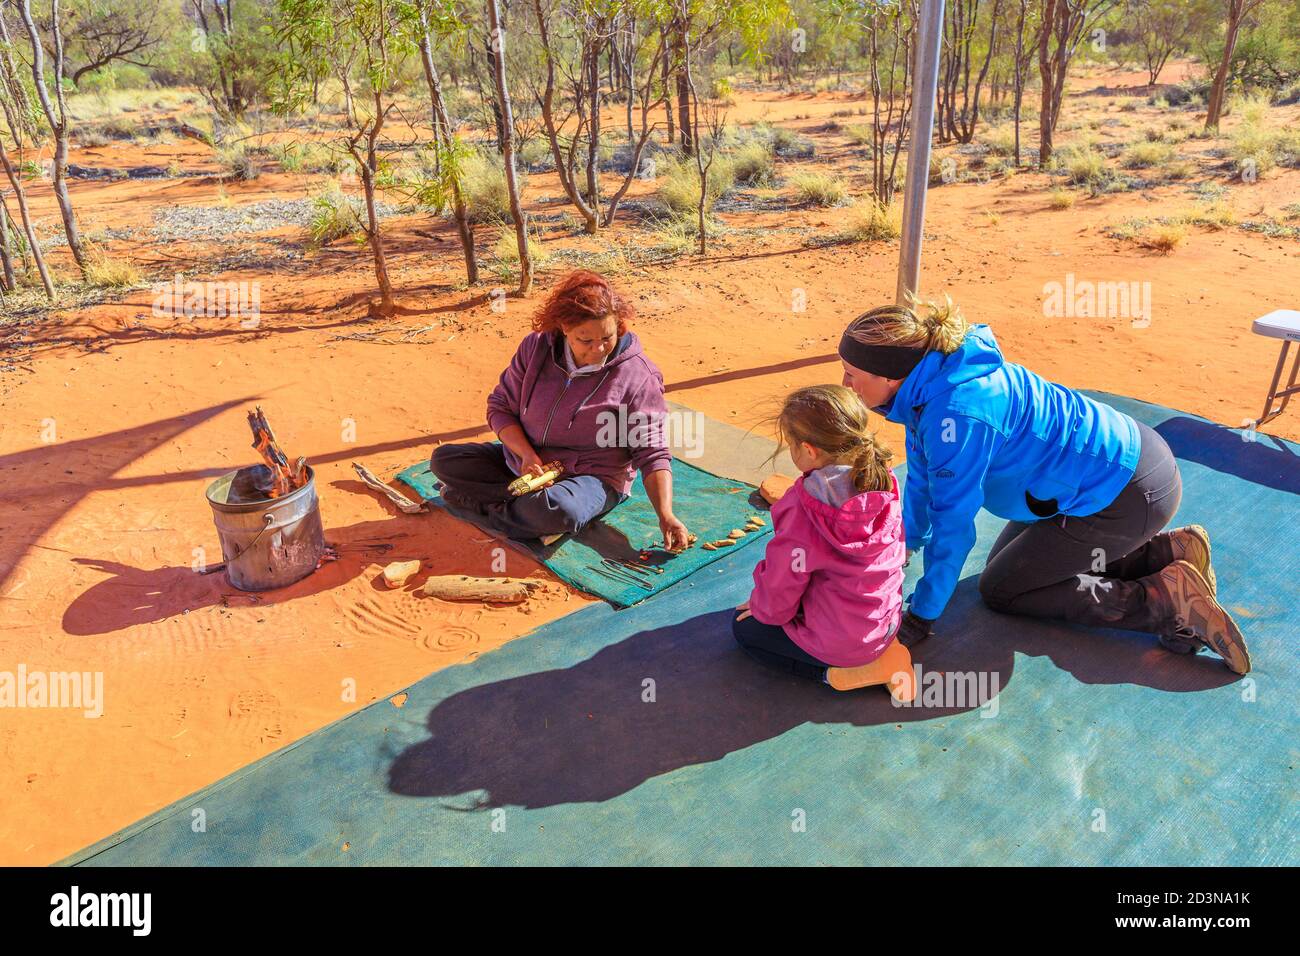 Stazione di Kings Creek, Territorio del Nord, Australia - 21 AGO 2019: famiglie con bambini osservare varietà boccola colorata semi raccolti a Karrke Foto Stock